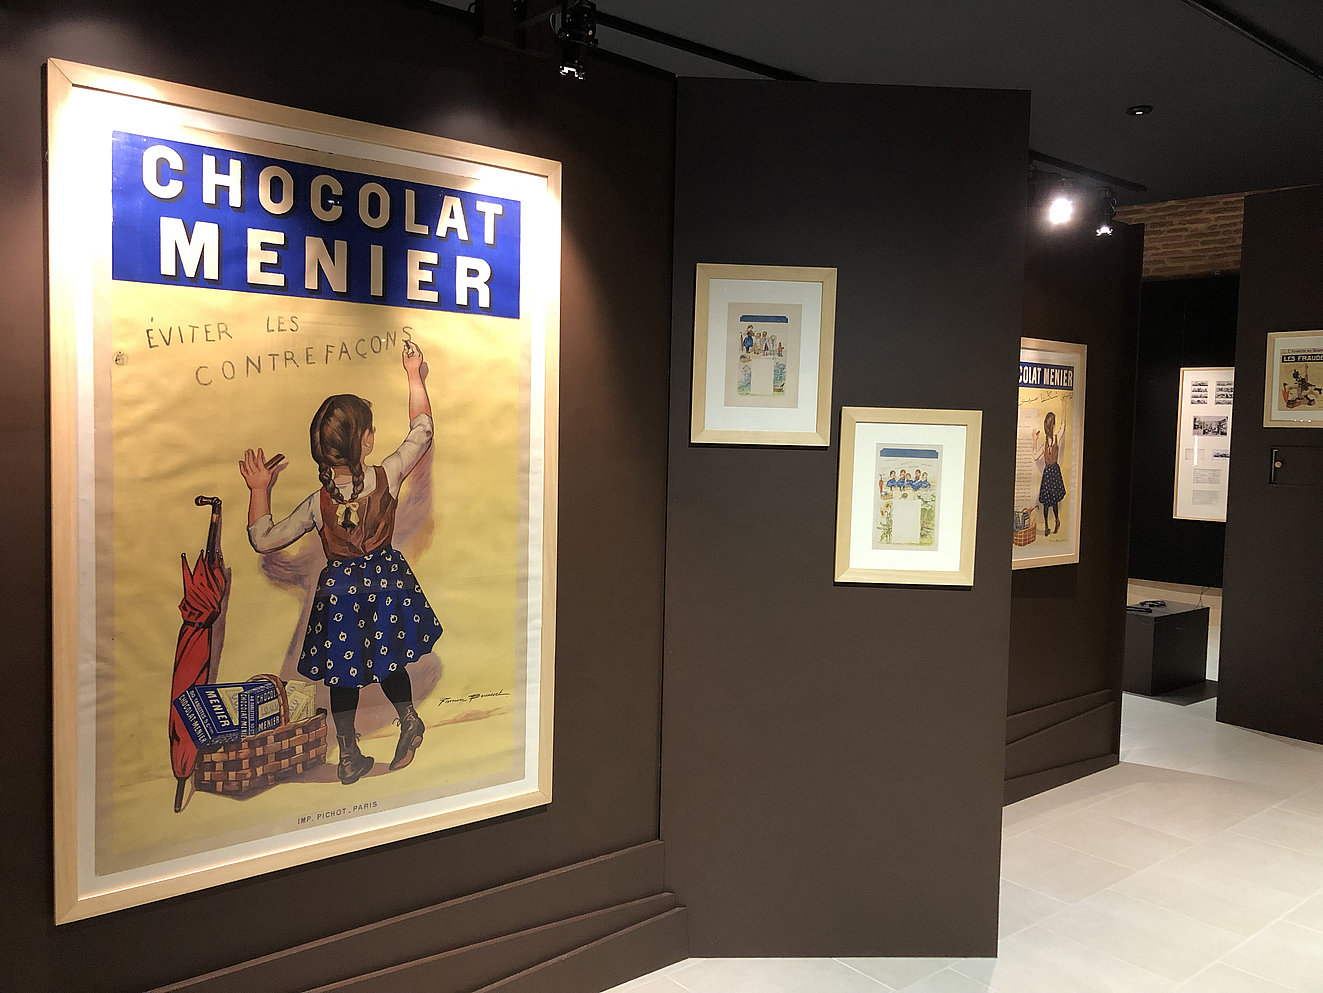 Affiche du Chocolat Meunier prise en photo dans le musée